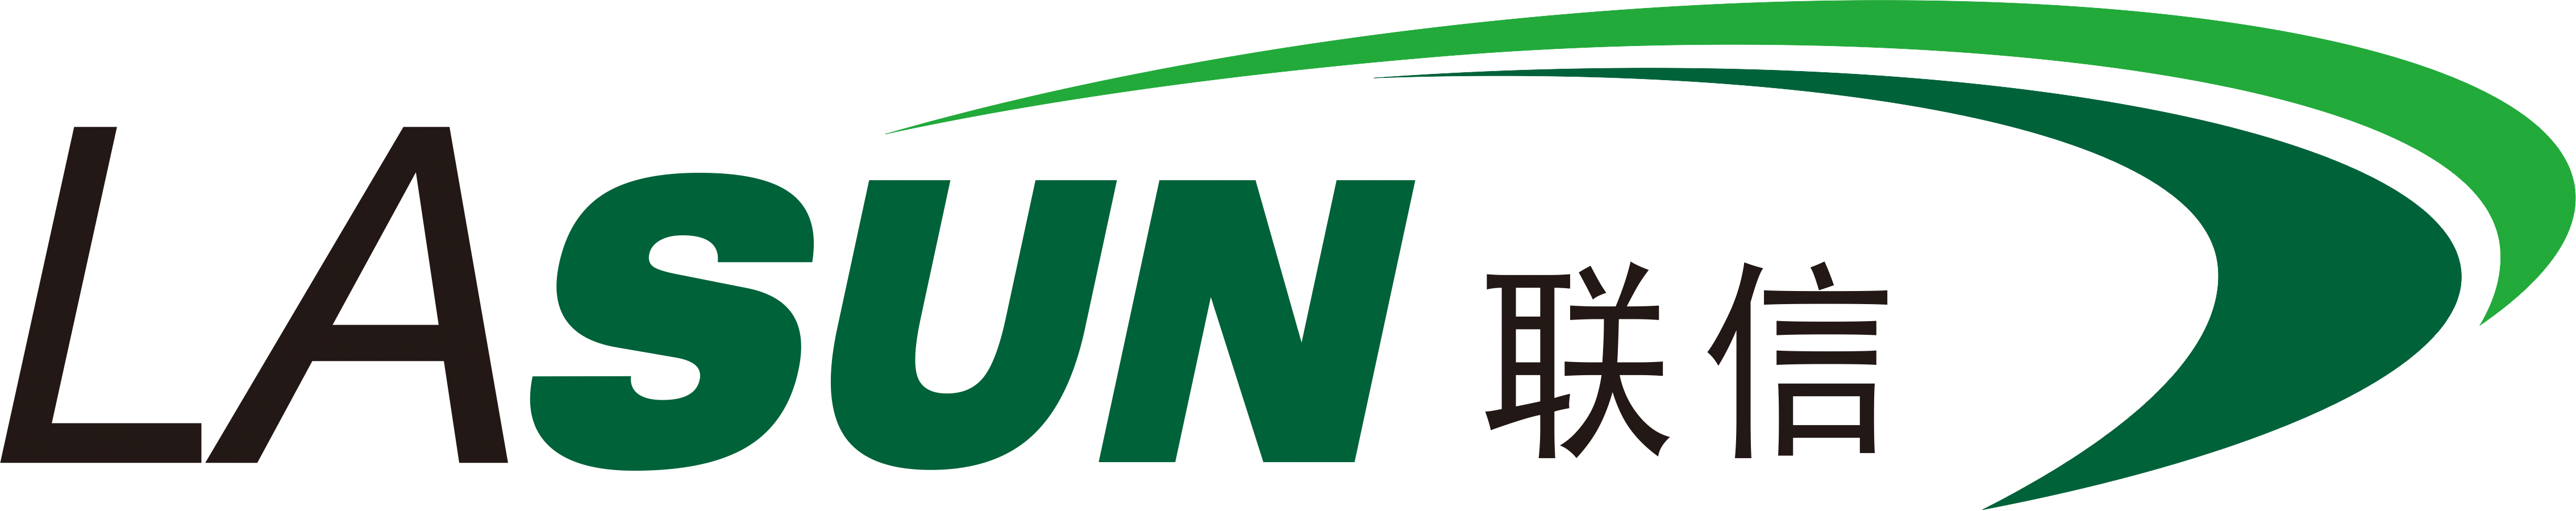 广州宏宁信息科技有限公司logo